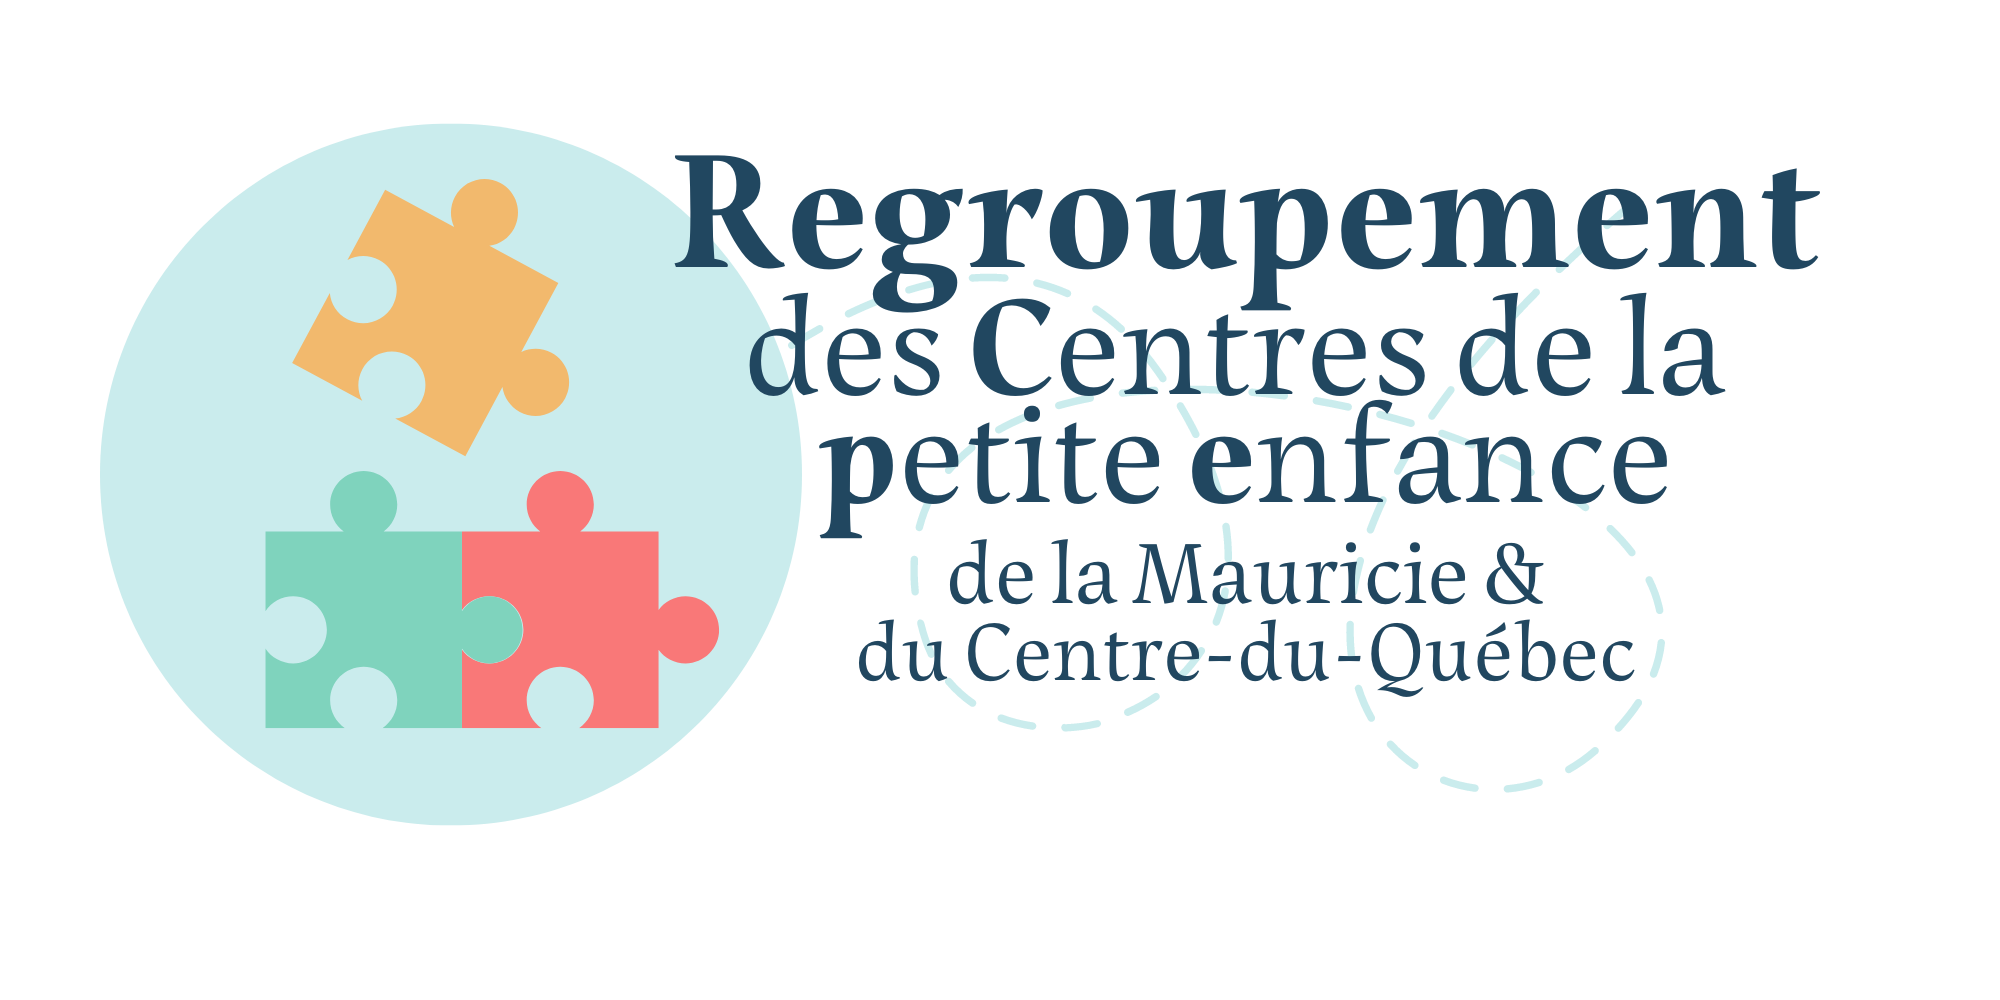 RCPE 04-17 - Regroupement des CPE - Mauricie et Centre-du-Québec